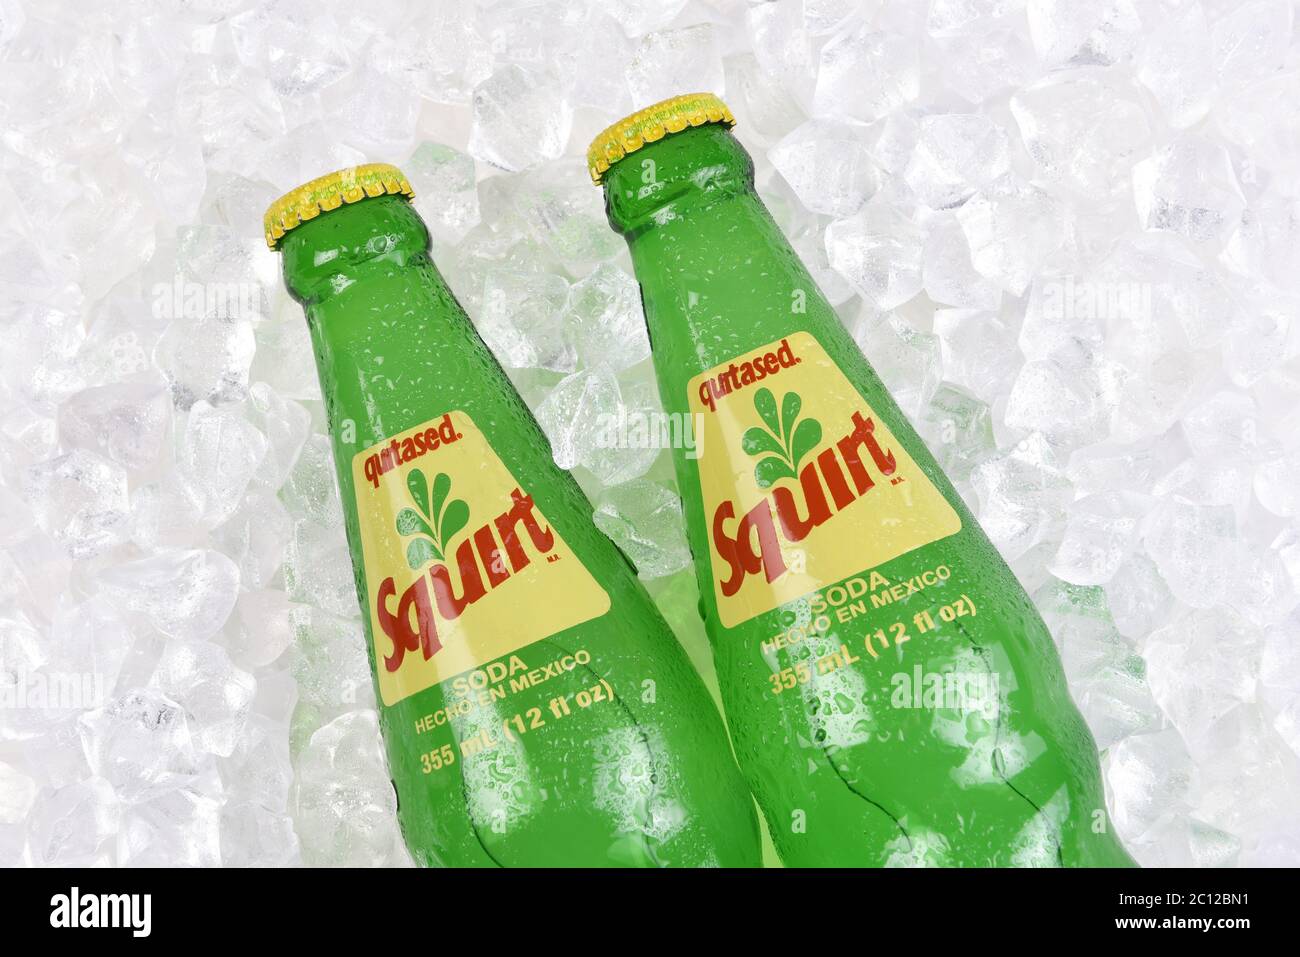 IRVINE, CALIFORNIA - 20 APRILE 2020: Primo piano di due bottiglie di Citrus Flavored Squirt bevanda analcolica in un letto di ghiaccio. Fabbricato in Messico. Foto Stock